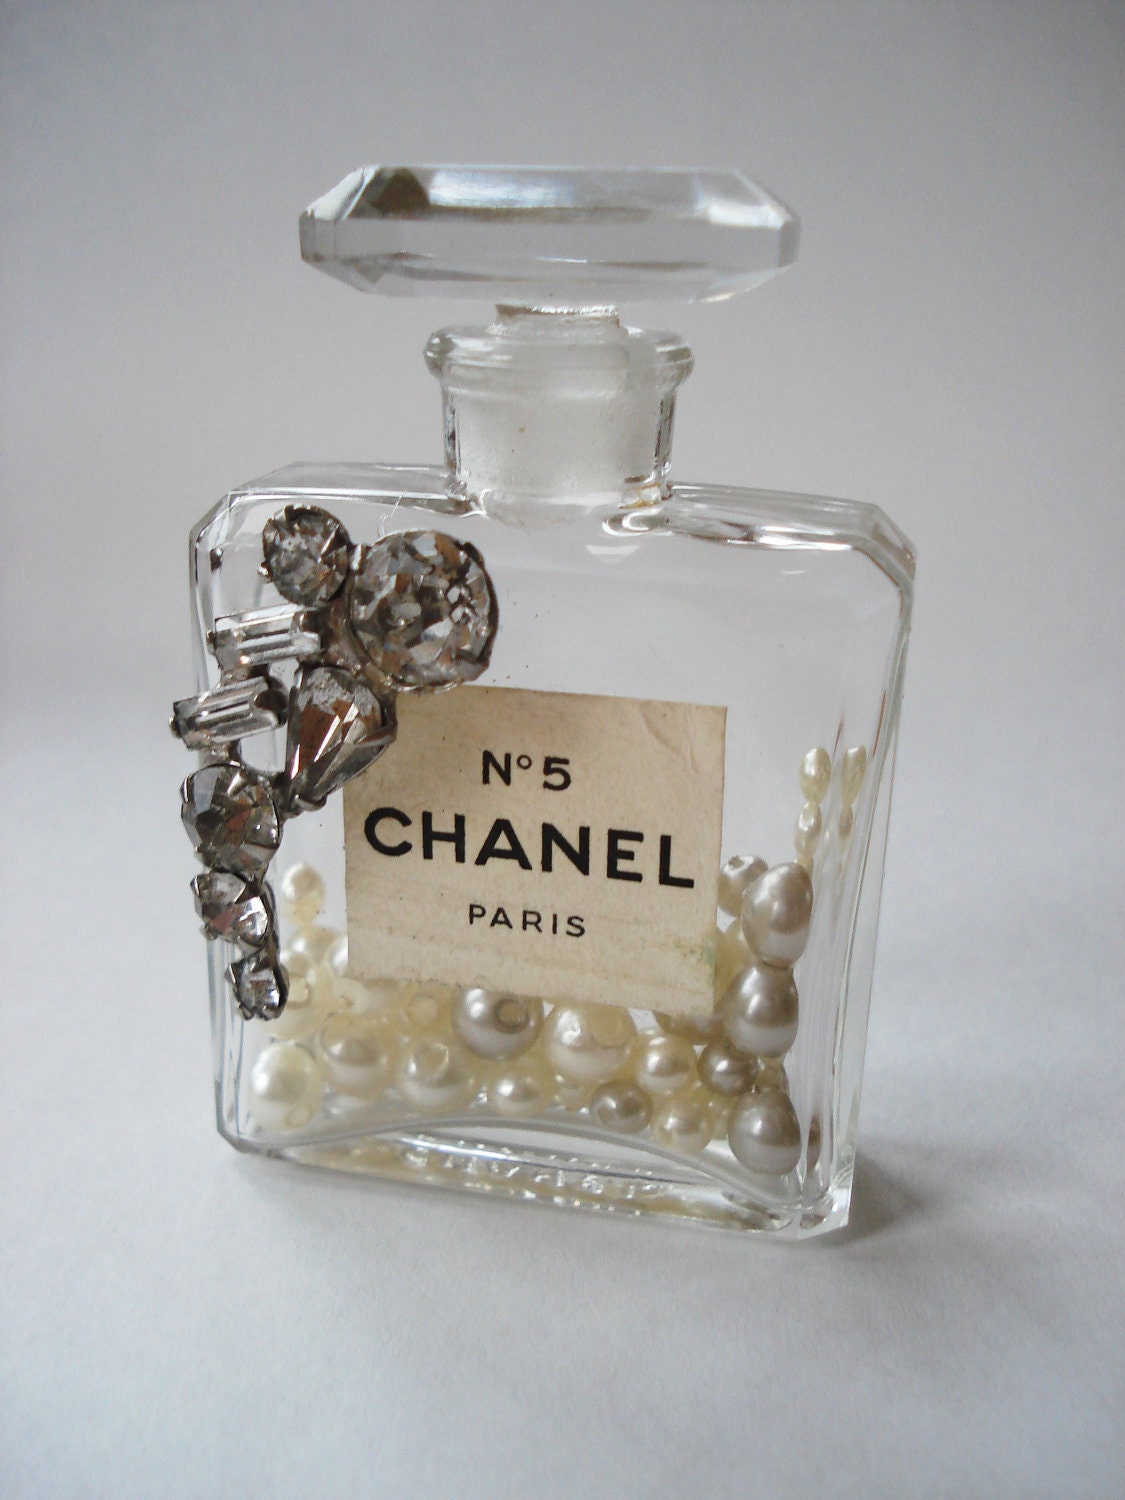 Vintage Authentic Chanel No 5 Perfume Miniature Bottle